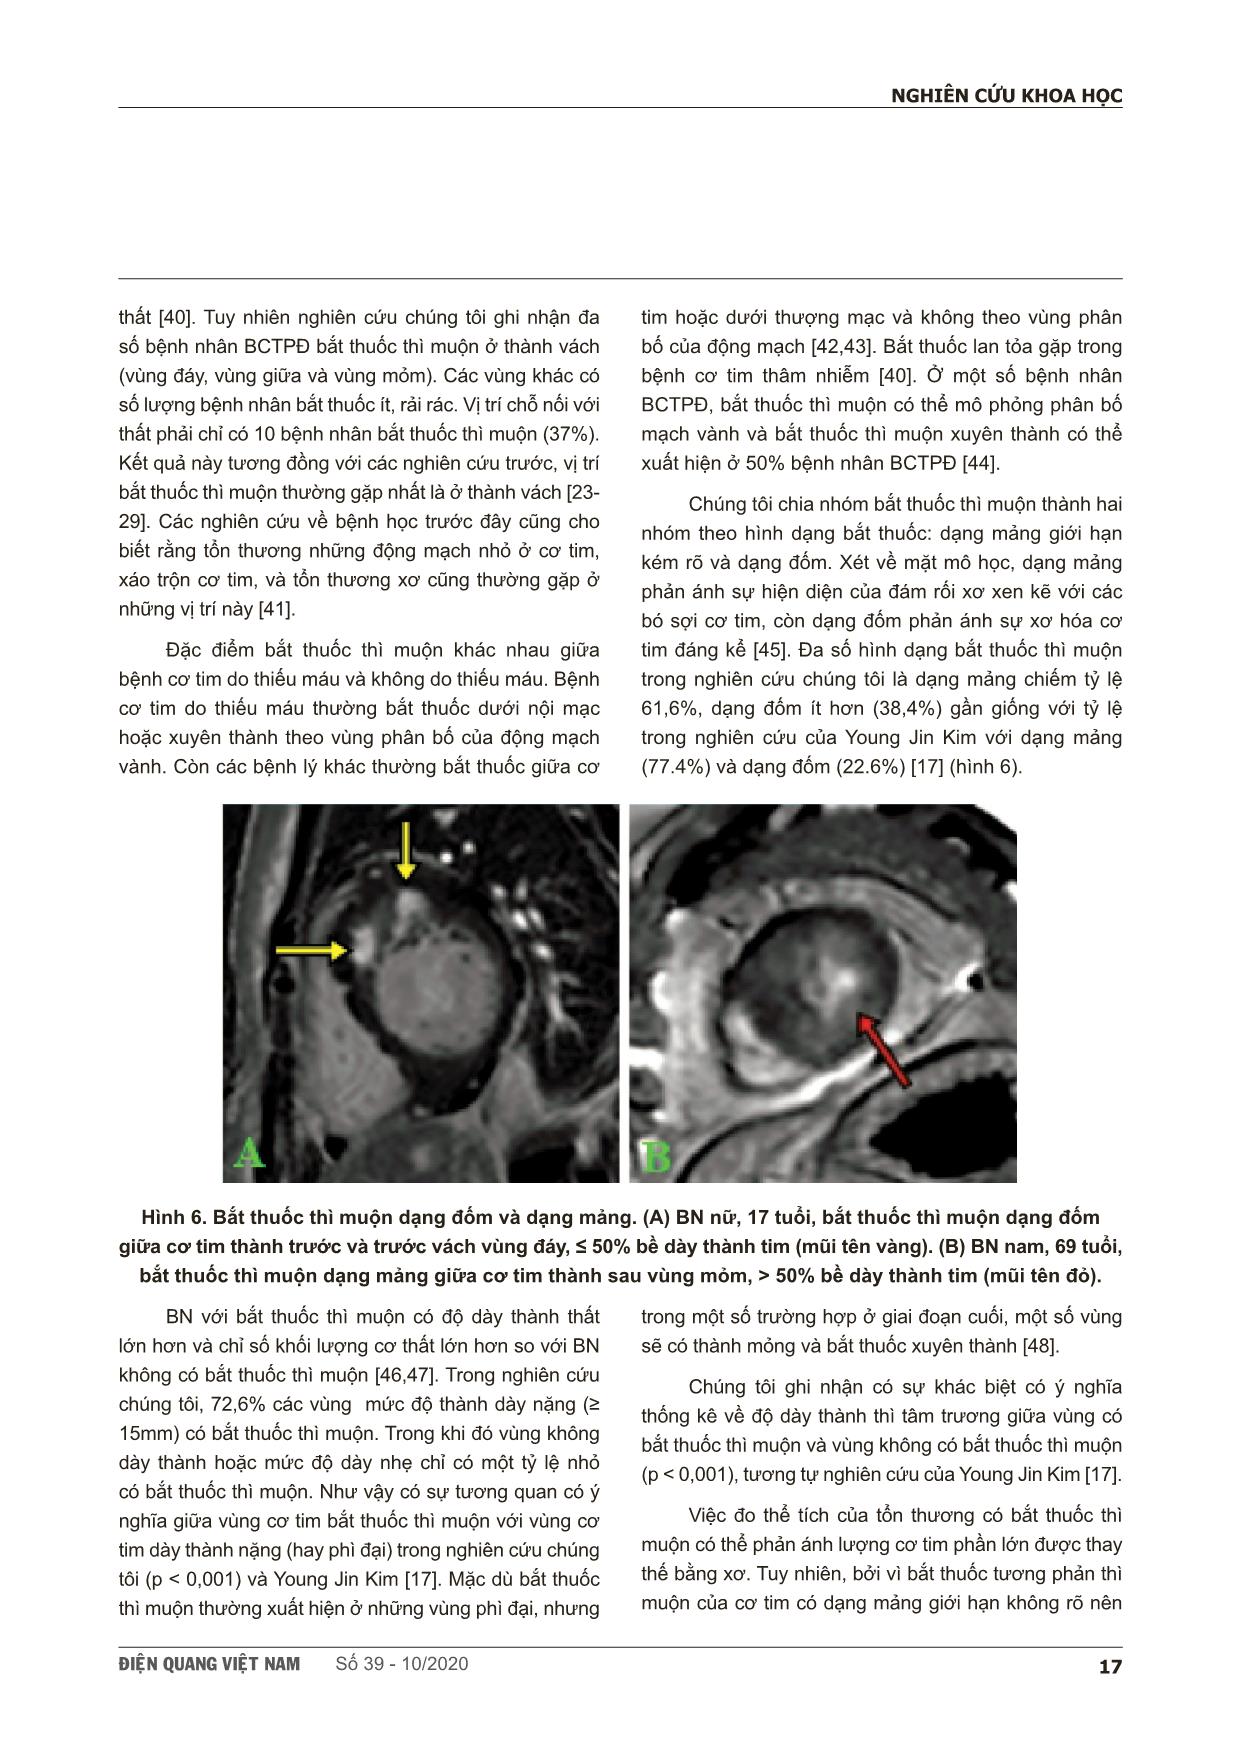 Khảo sát đặc điểm hình ảnh bắt thuốc thì muộn trên cộng hưởng từ của bệnh cơ tim phì đại trang 7